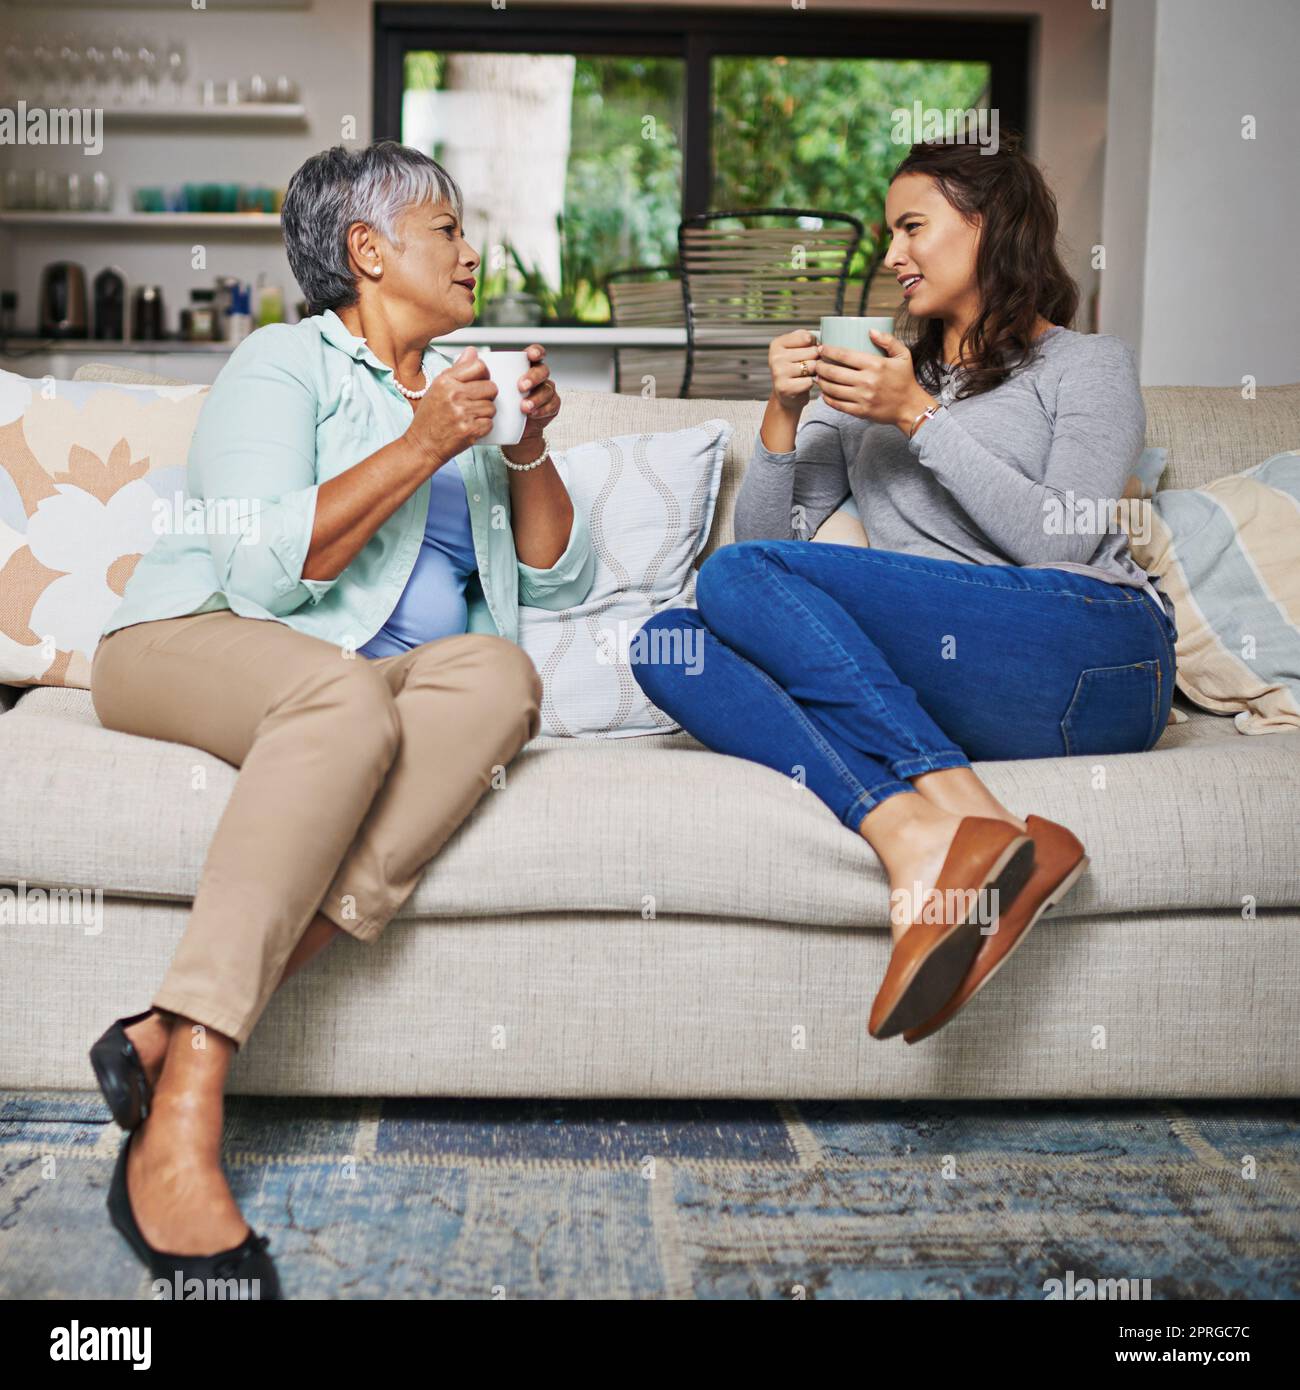 Wenn Sie nicht etwas nettes sagen können, junge Dame ... eine junge Frau und ihre Mutter, die auf dem Sofa aufholen, während sie Kaffee trinken. Stockfoto